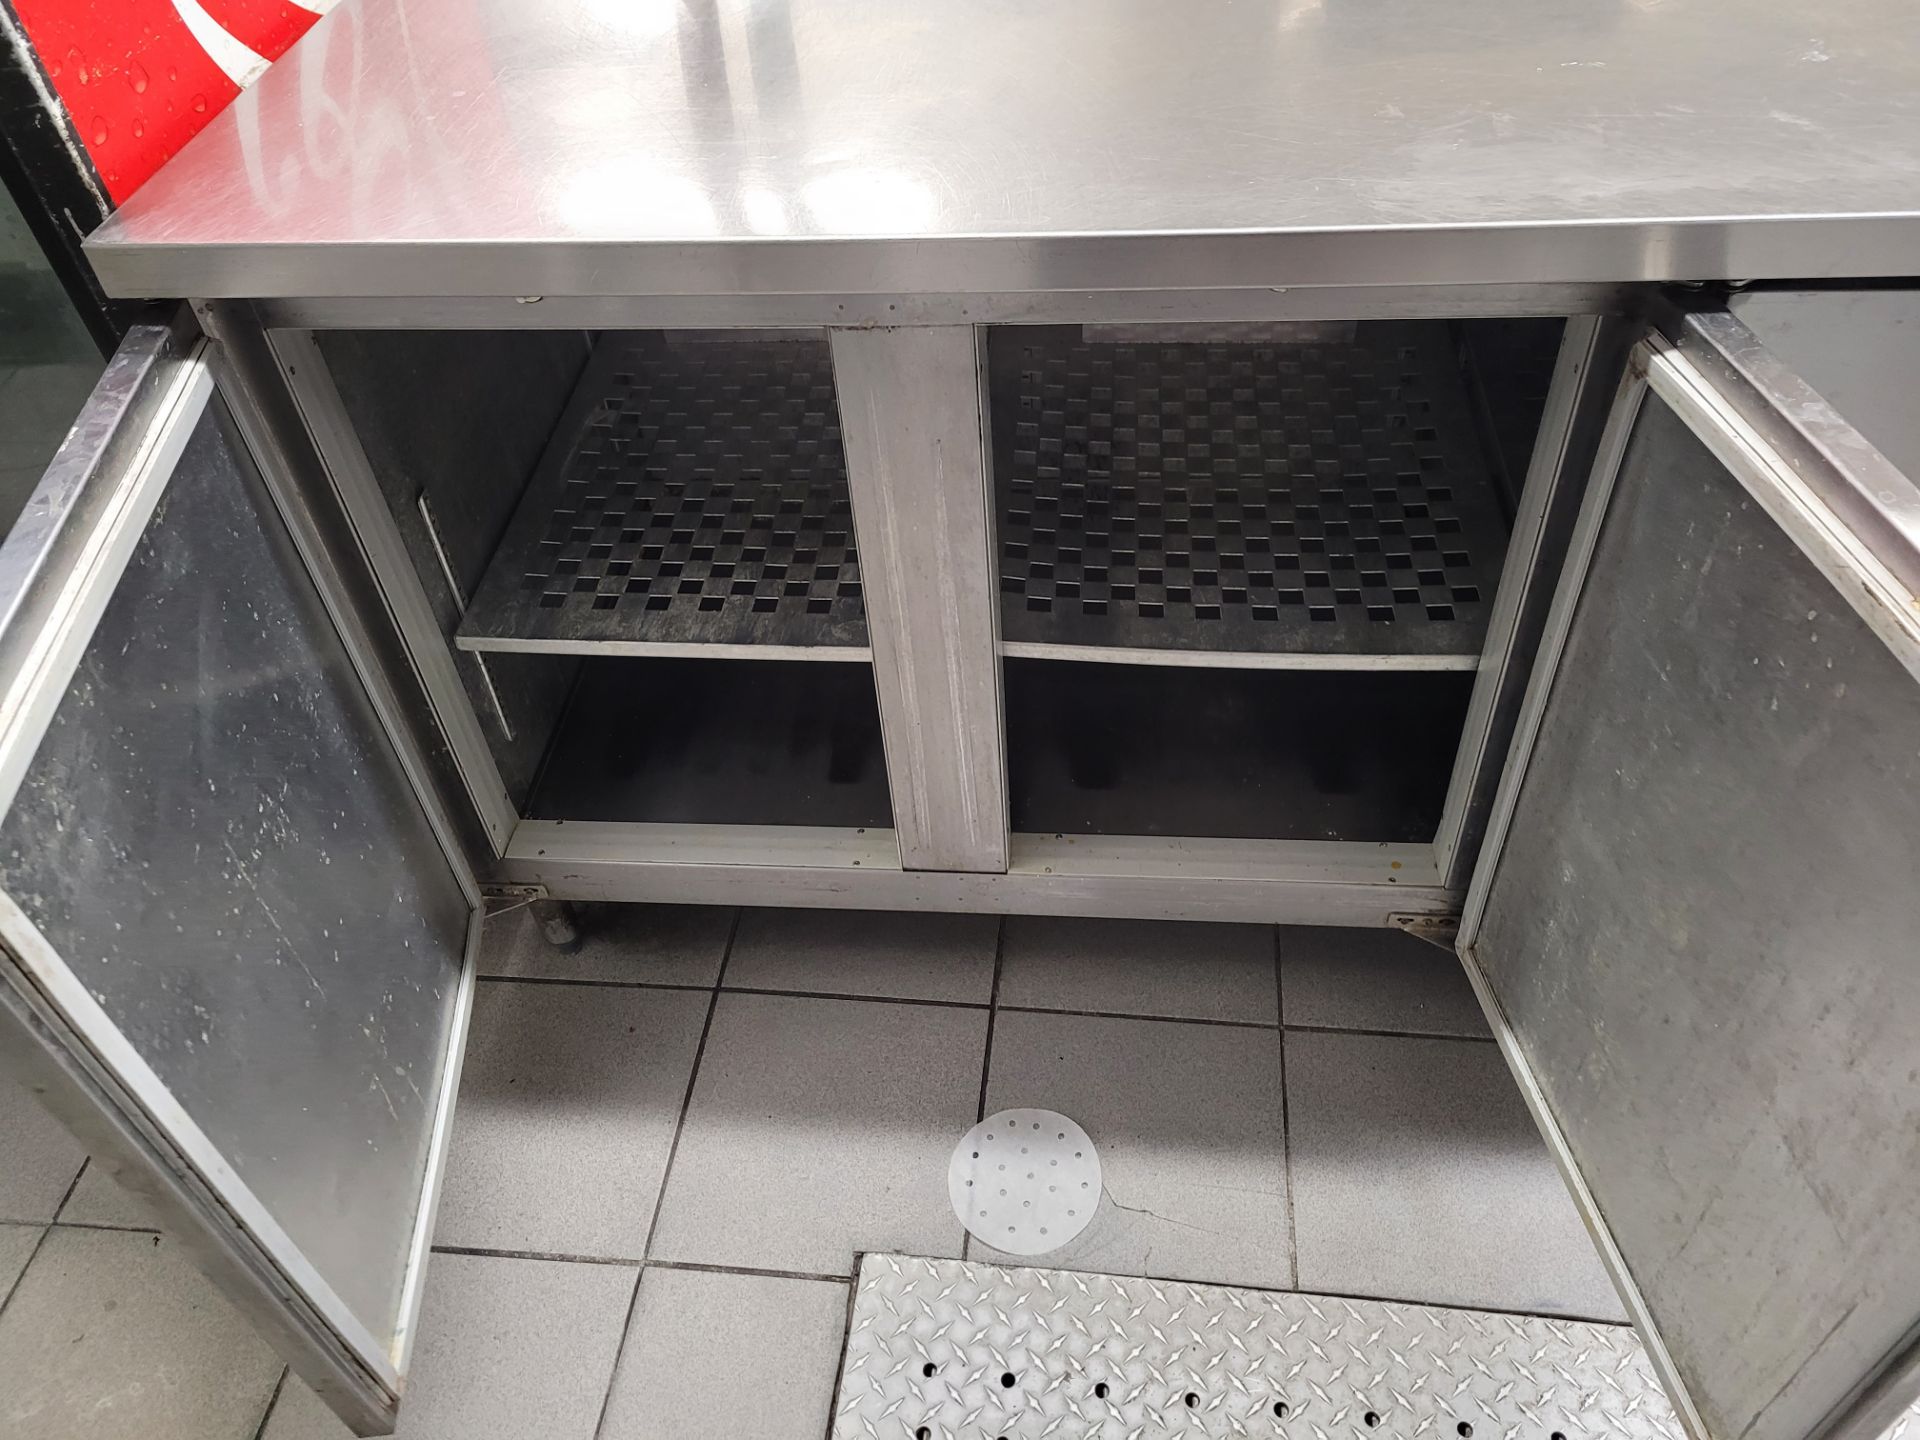 Table de préparation réfrigérée à 3 portes avec compresseur intégré et étagères en acier inoxydable - Image 3 of 9